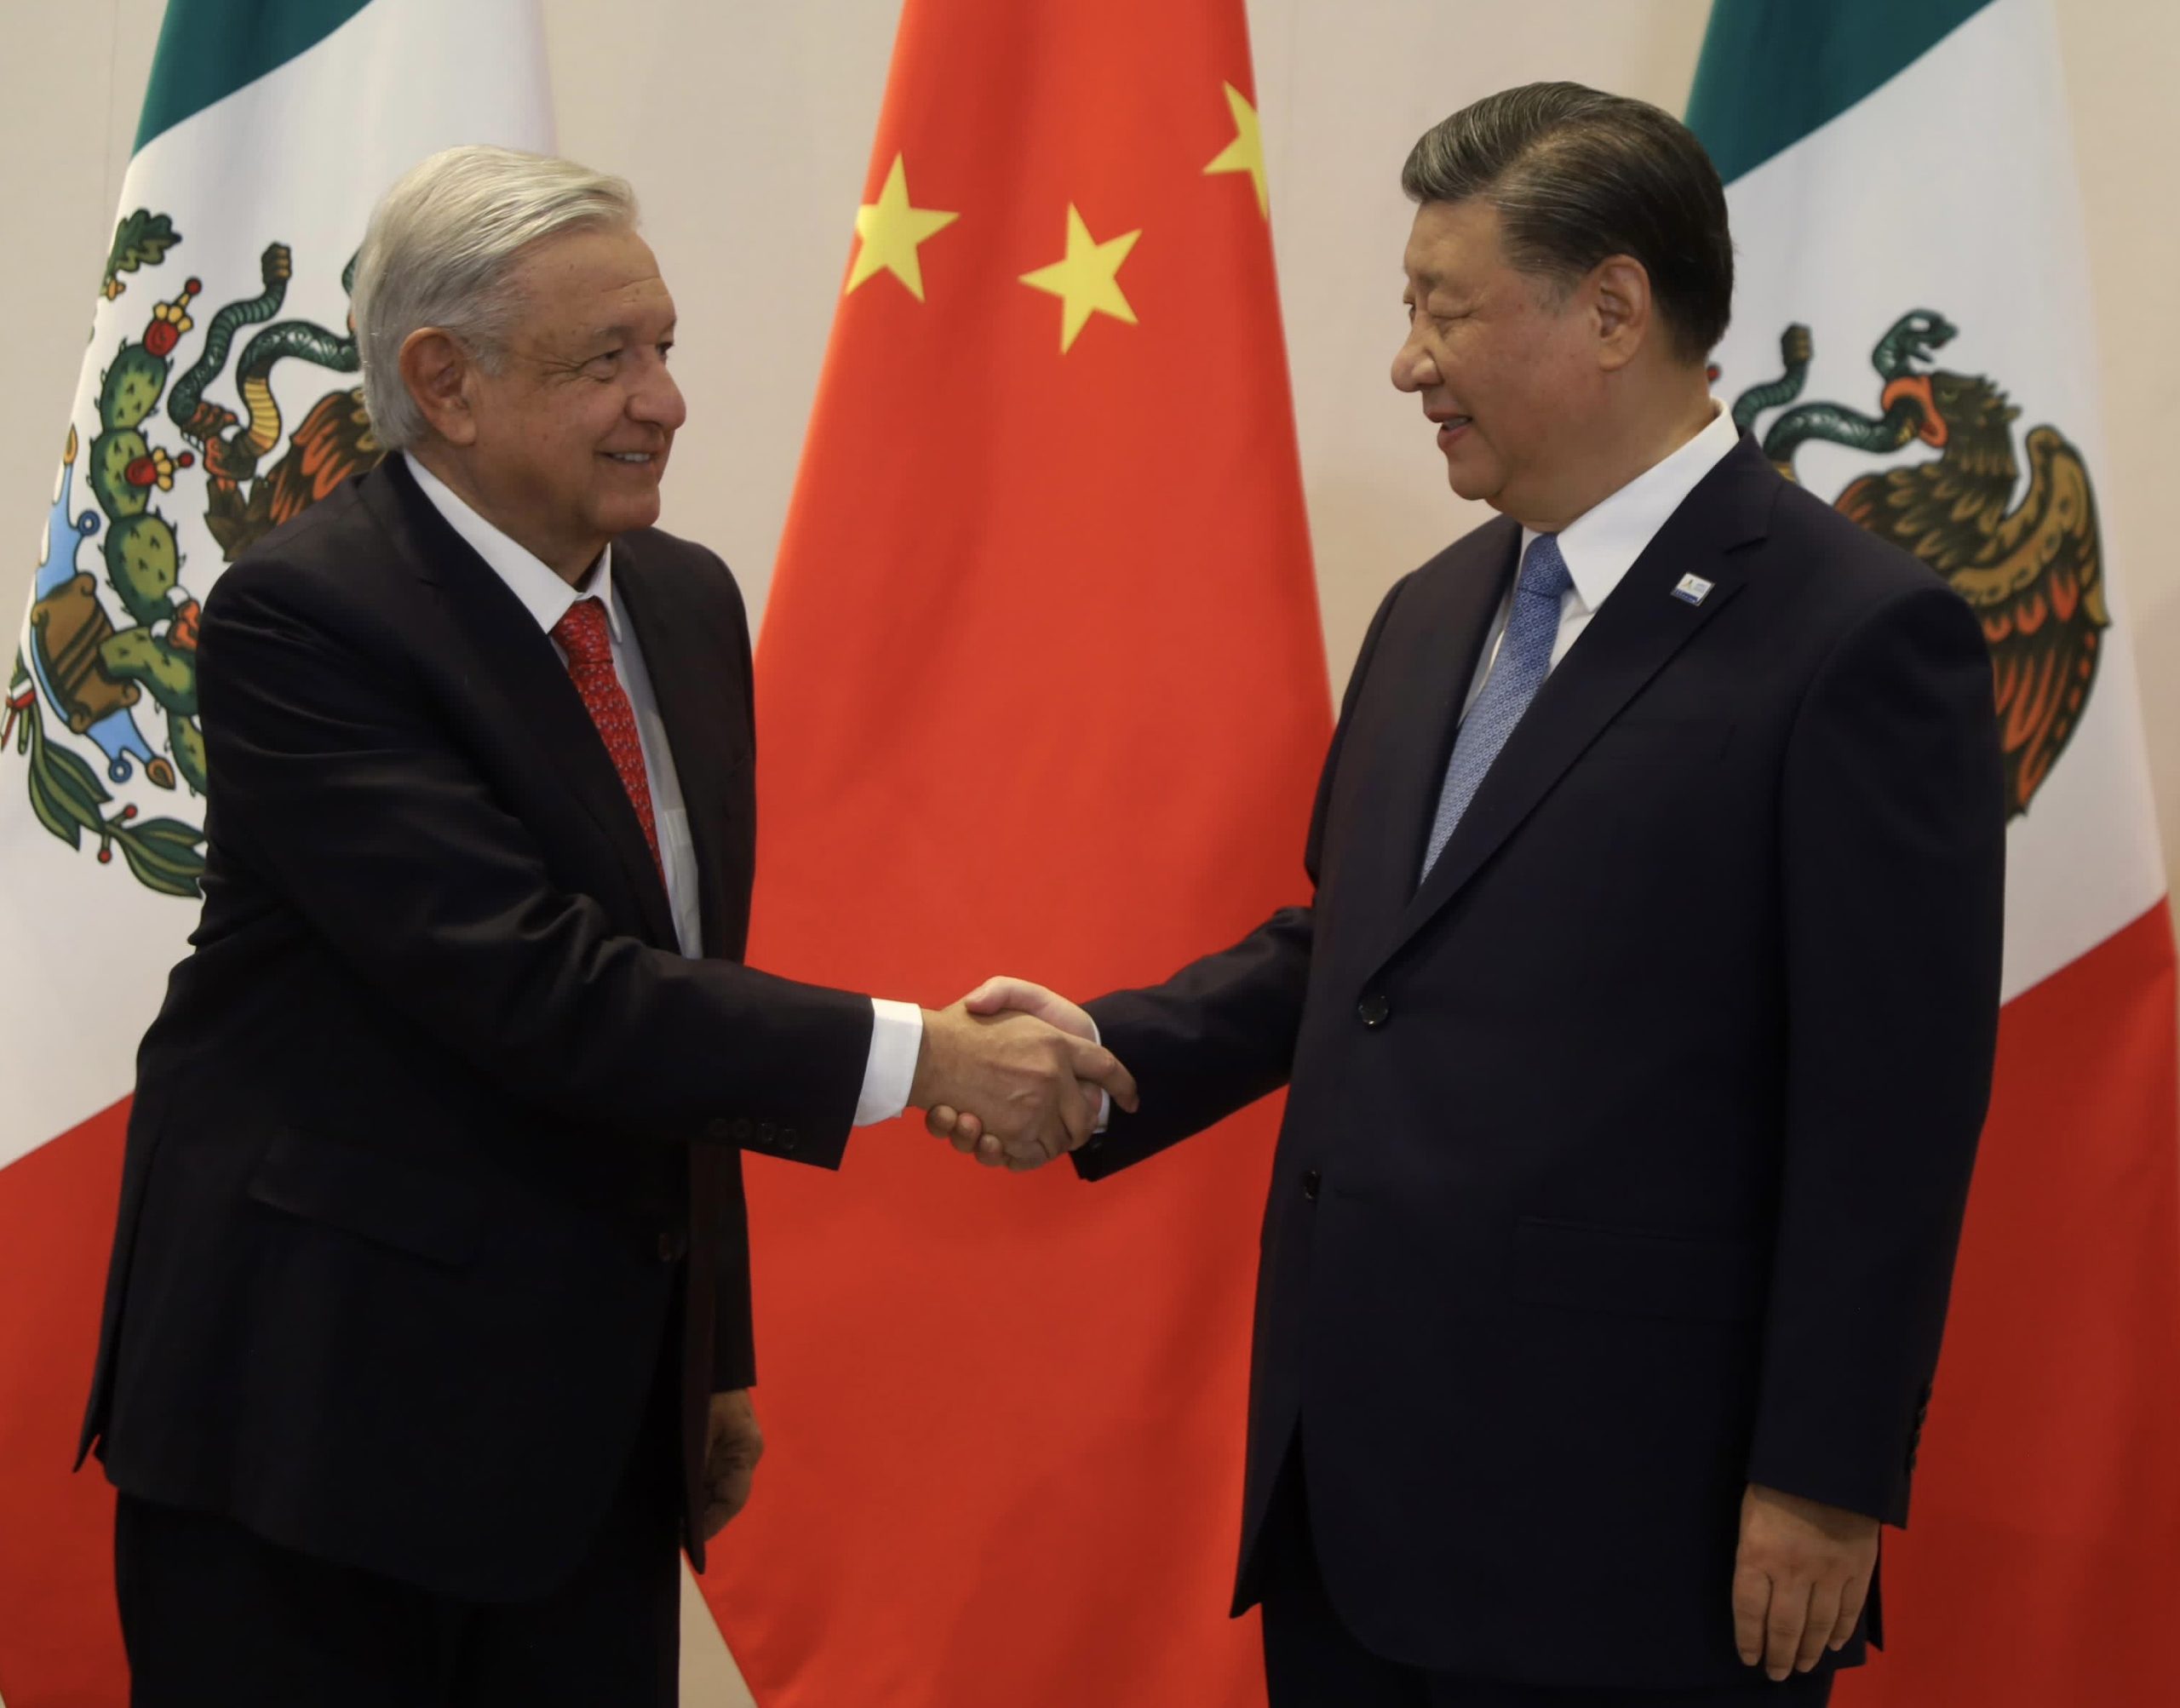 AMLO, es felicitado por Xi Jinping por el “progreso” de Méx